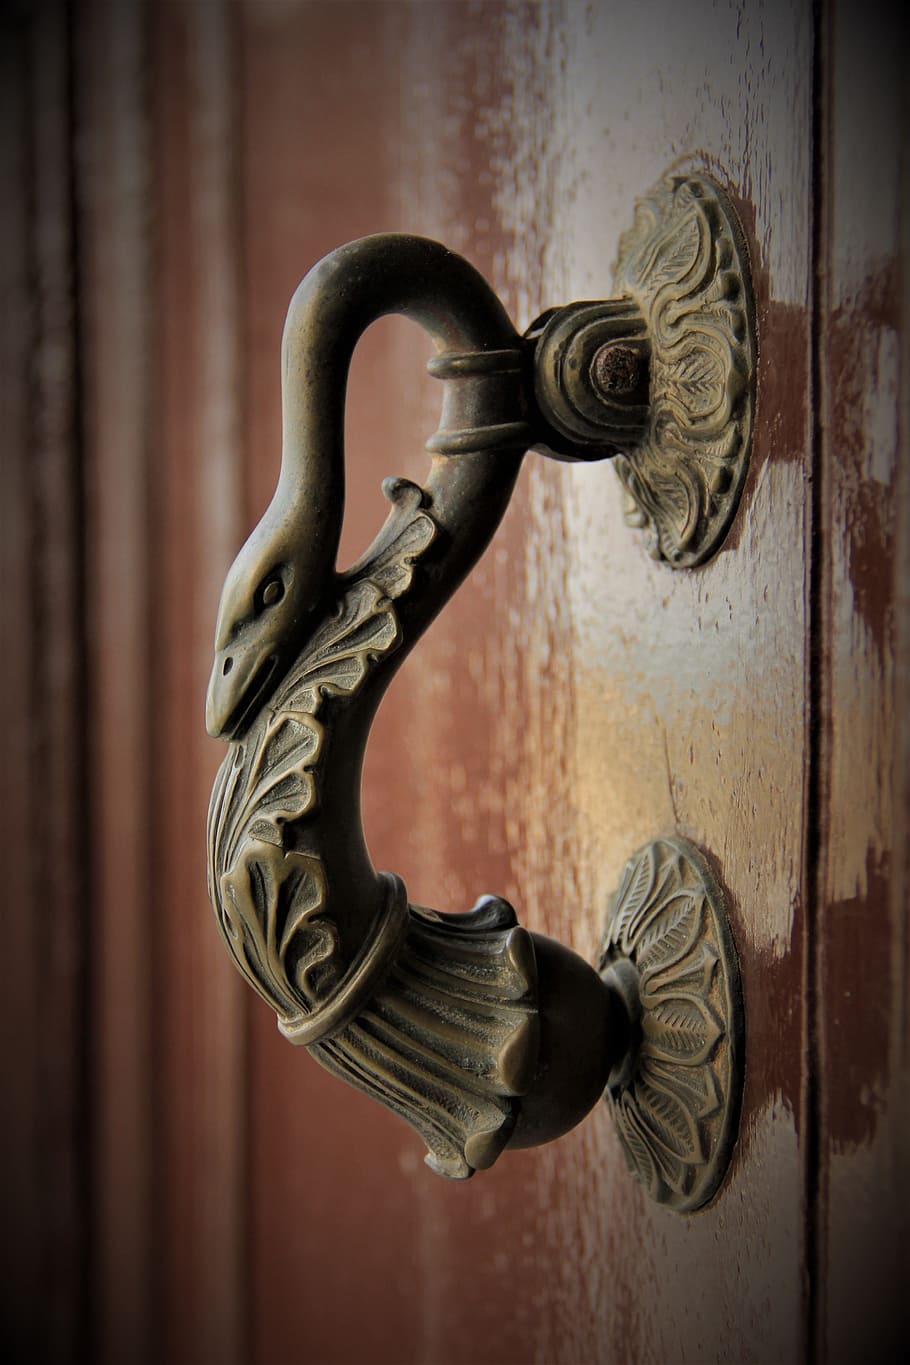 오래된 문, 오래된, 입력, 문, 입구, 안전, 보안, 보호, 손잡이, 금속